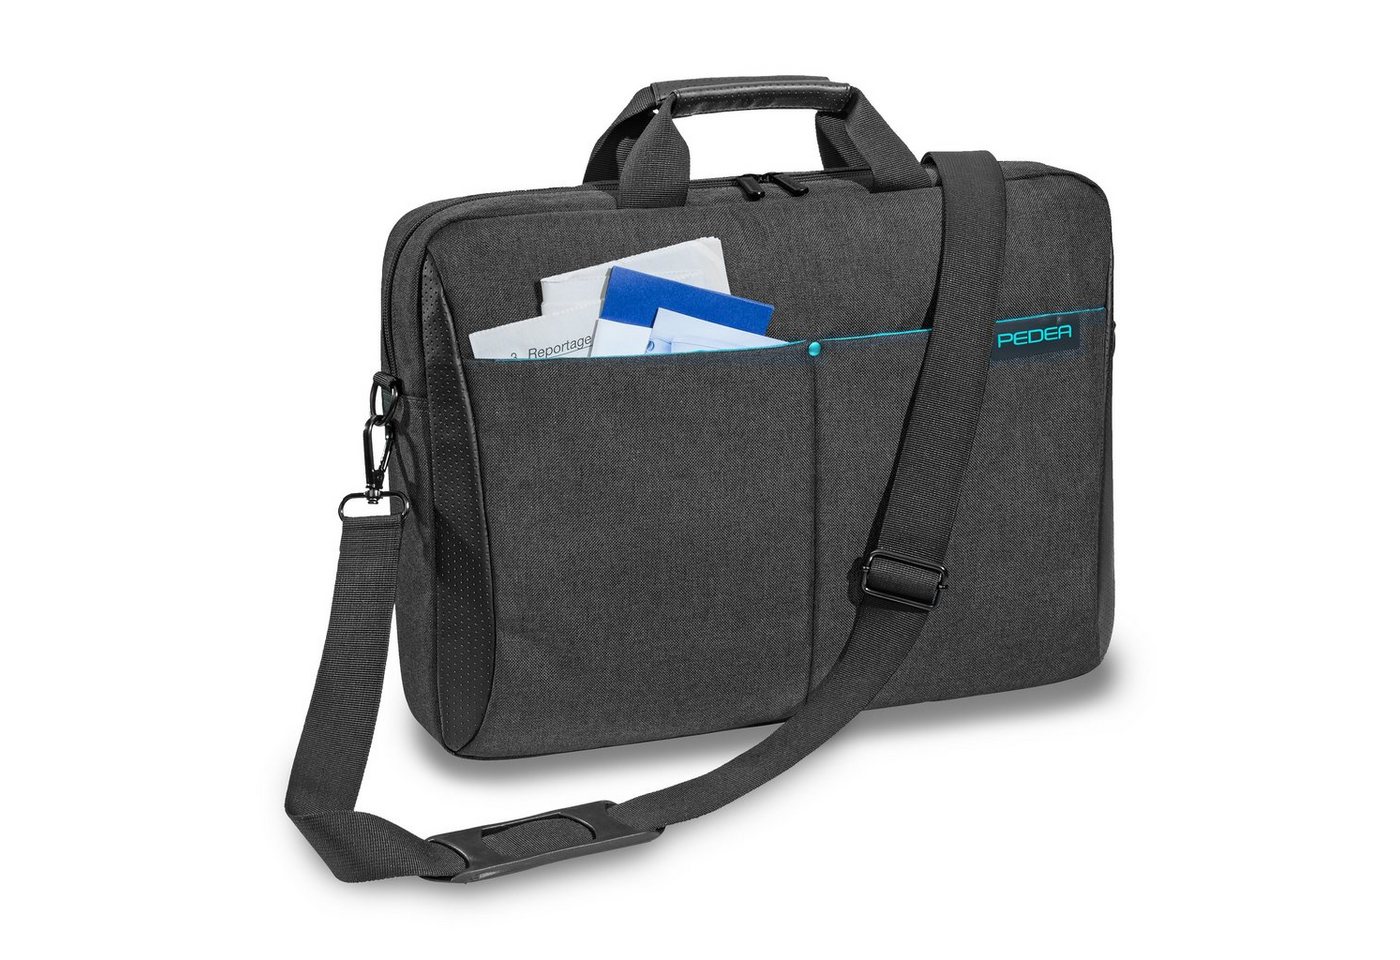 PEDEA Laptoptasche LIFESTYLE (15,6 Zoll (39,6 cm), dicke Polsterung, wasserabweisenden Materialien, einfache Handhabung, lange Reißverschlüsse von PEDEA